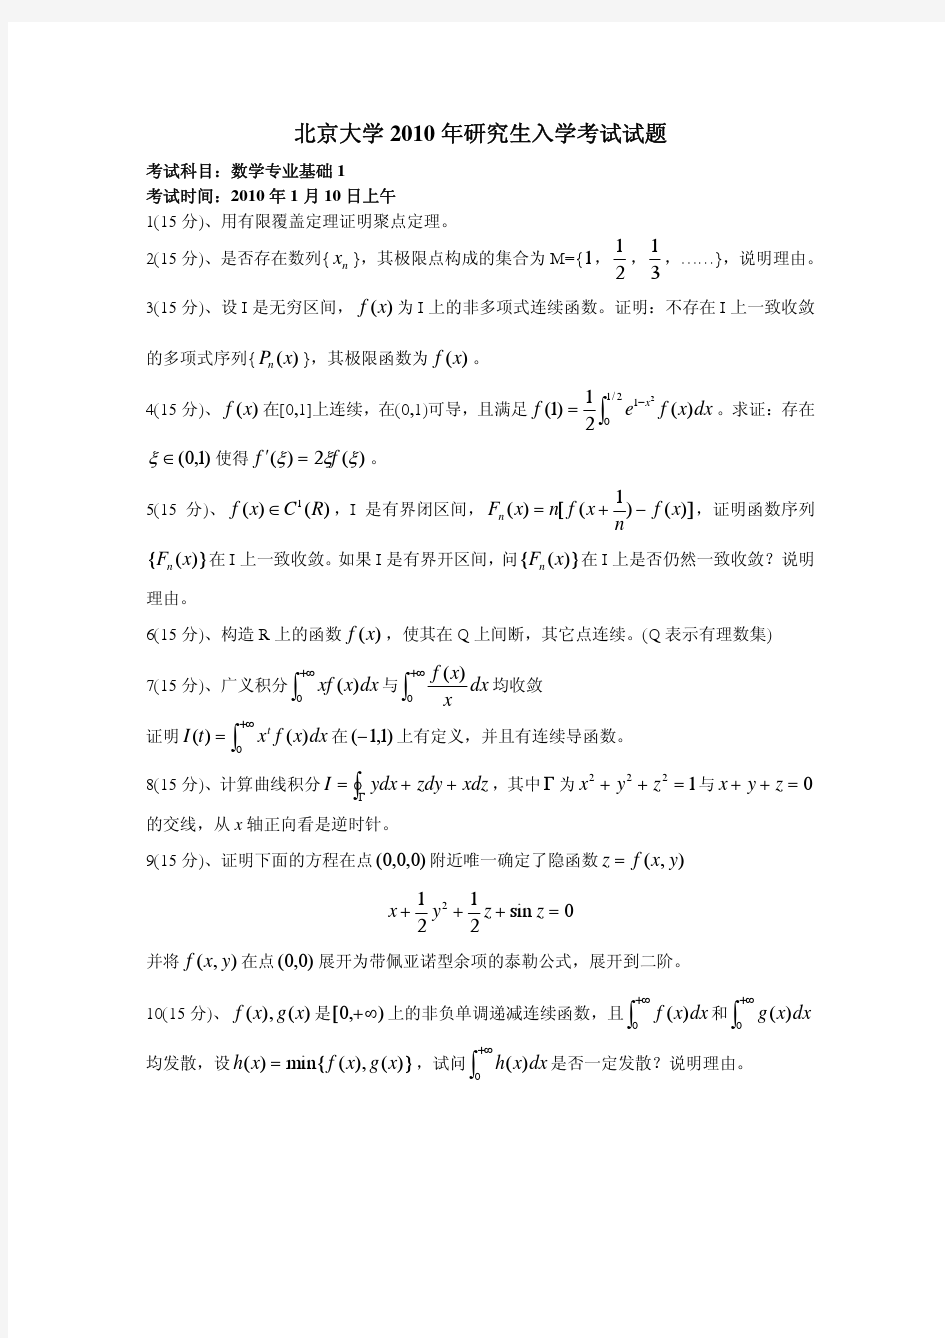 2010年考研真题北京大学数学分析高等代数几何